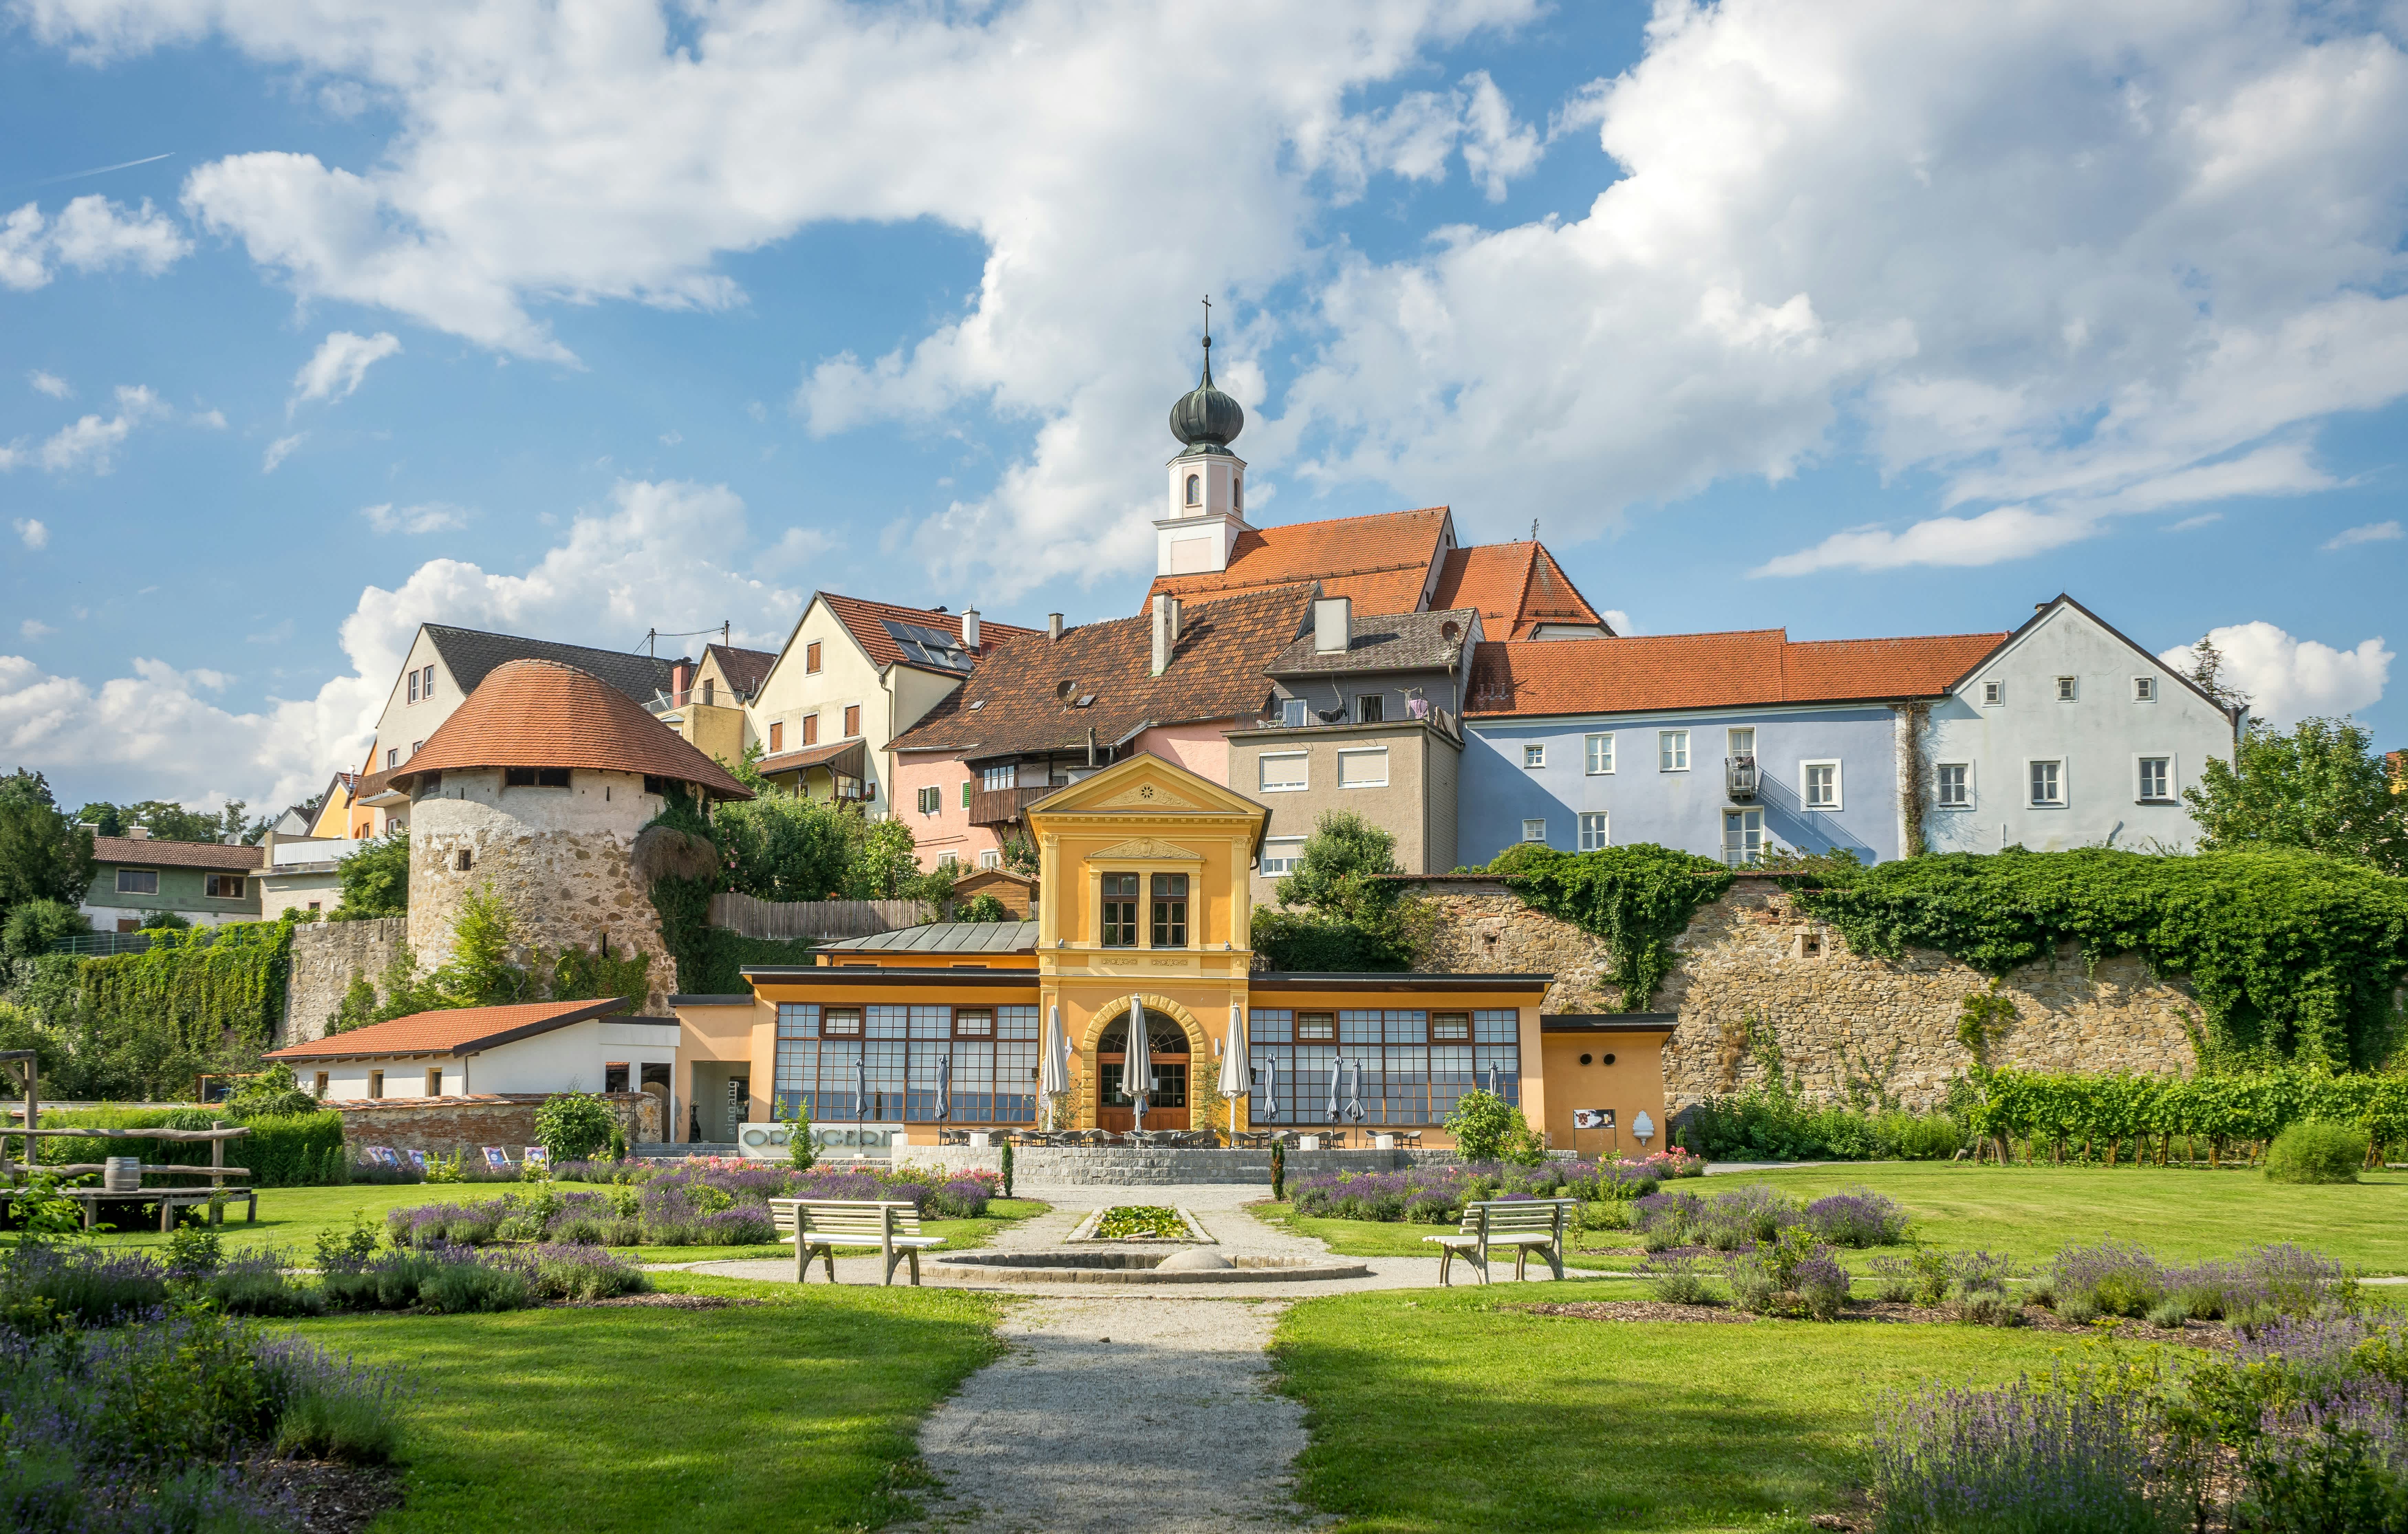 Entdecken Sie St. Florian: Lebensqualität und regionale Highlights in Oberösterreich. Besuchen Sie historische Sehenswürdigkeiten und genießen Sie die idyllische Natur.